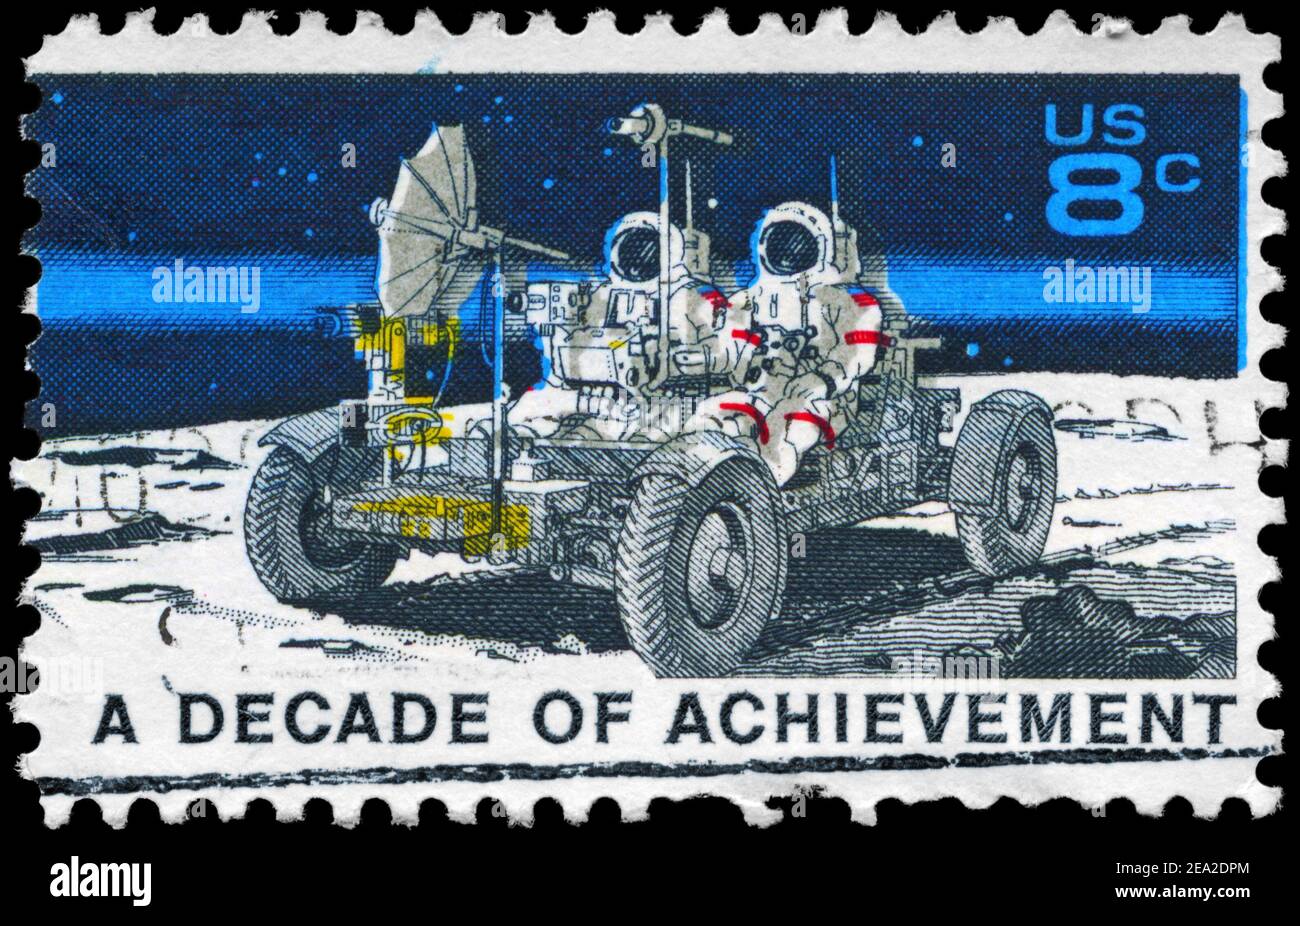 USA - UM 1971: Eine in den USA gedruckte Briefmarke zeigt den Lunar Rover, Apollo 15 Mondexplorationsmission Juli 26-August 7, Space Achievement Decade Ausgabe, c Stockfoto